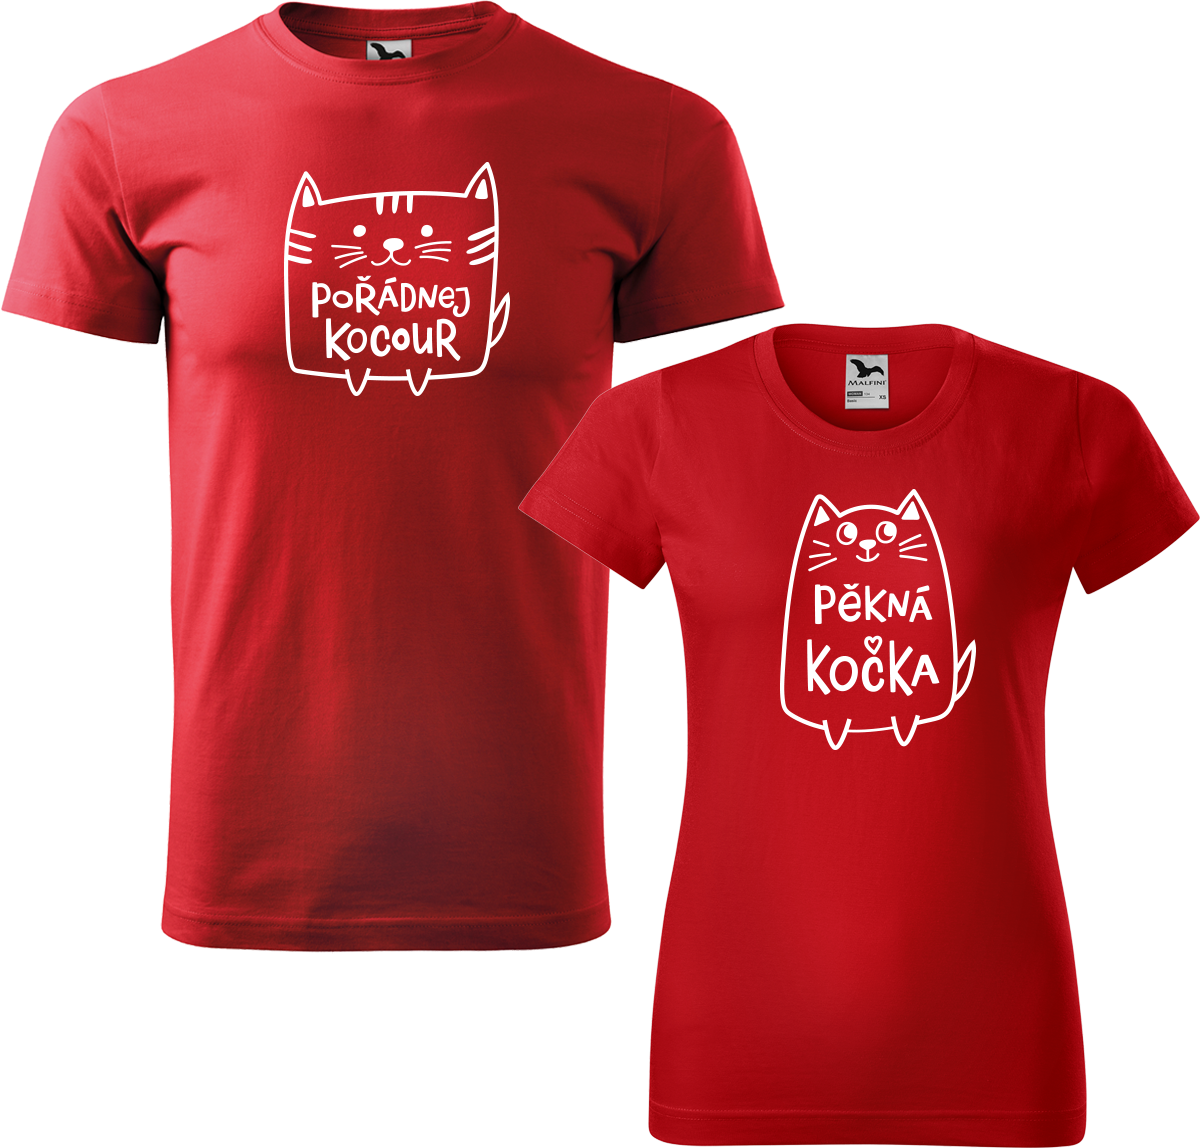 Trička pro páry - Pořádnej kocour a pěkná kočka Barva: Červená (07), Velikost dámské tričko: S, Velikost pánské tričko: 3XL